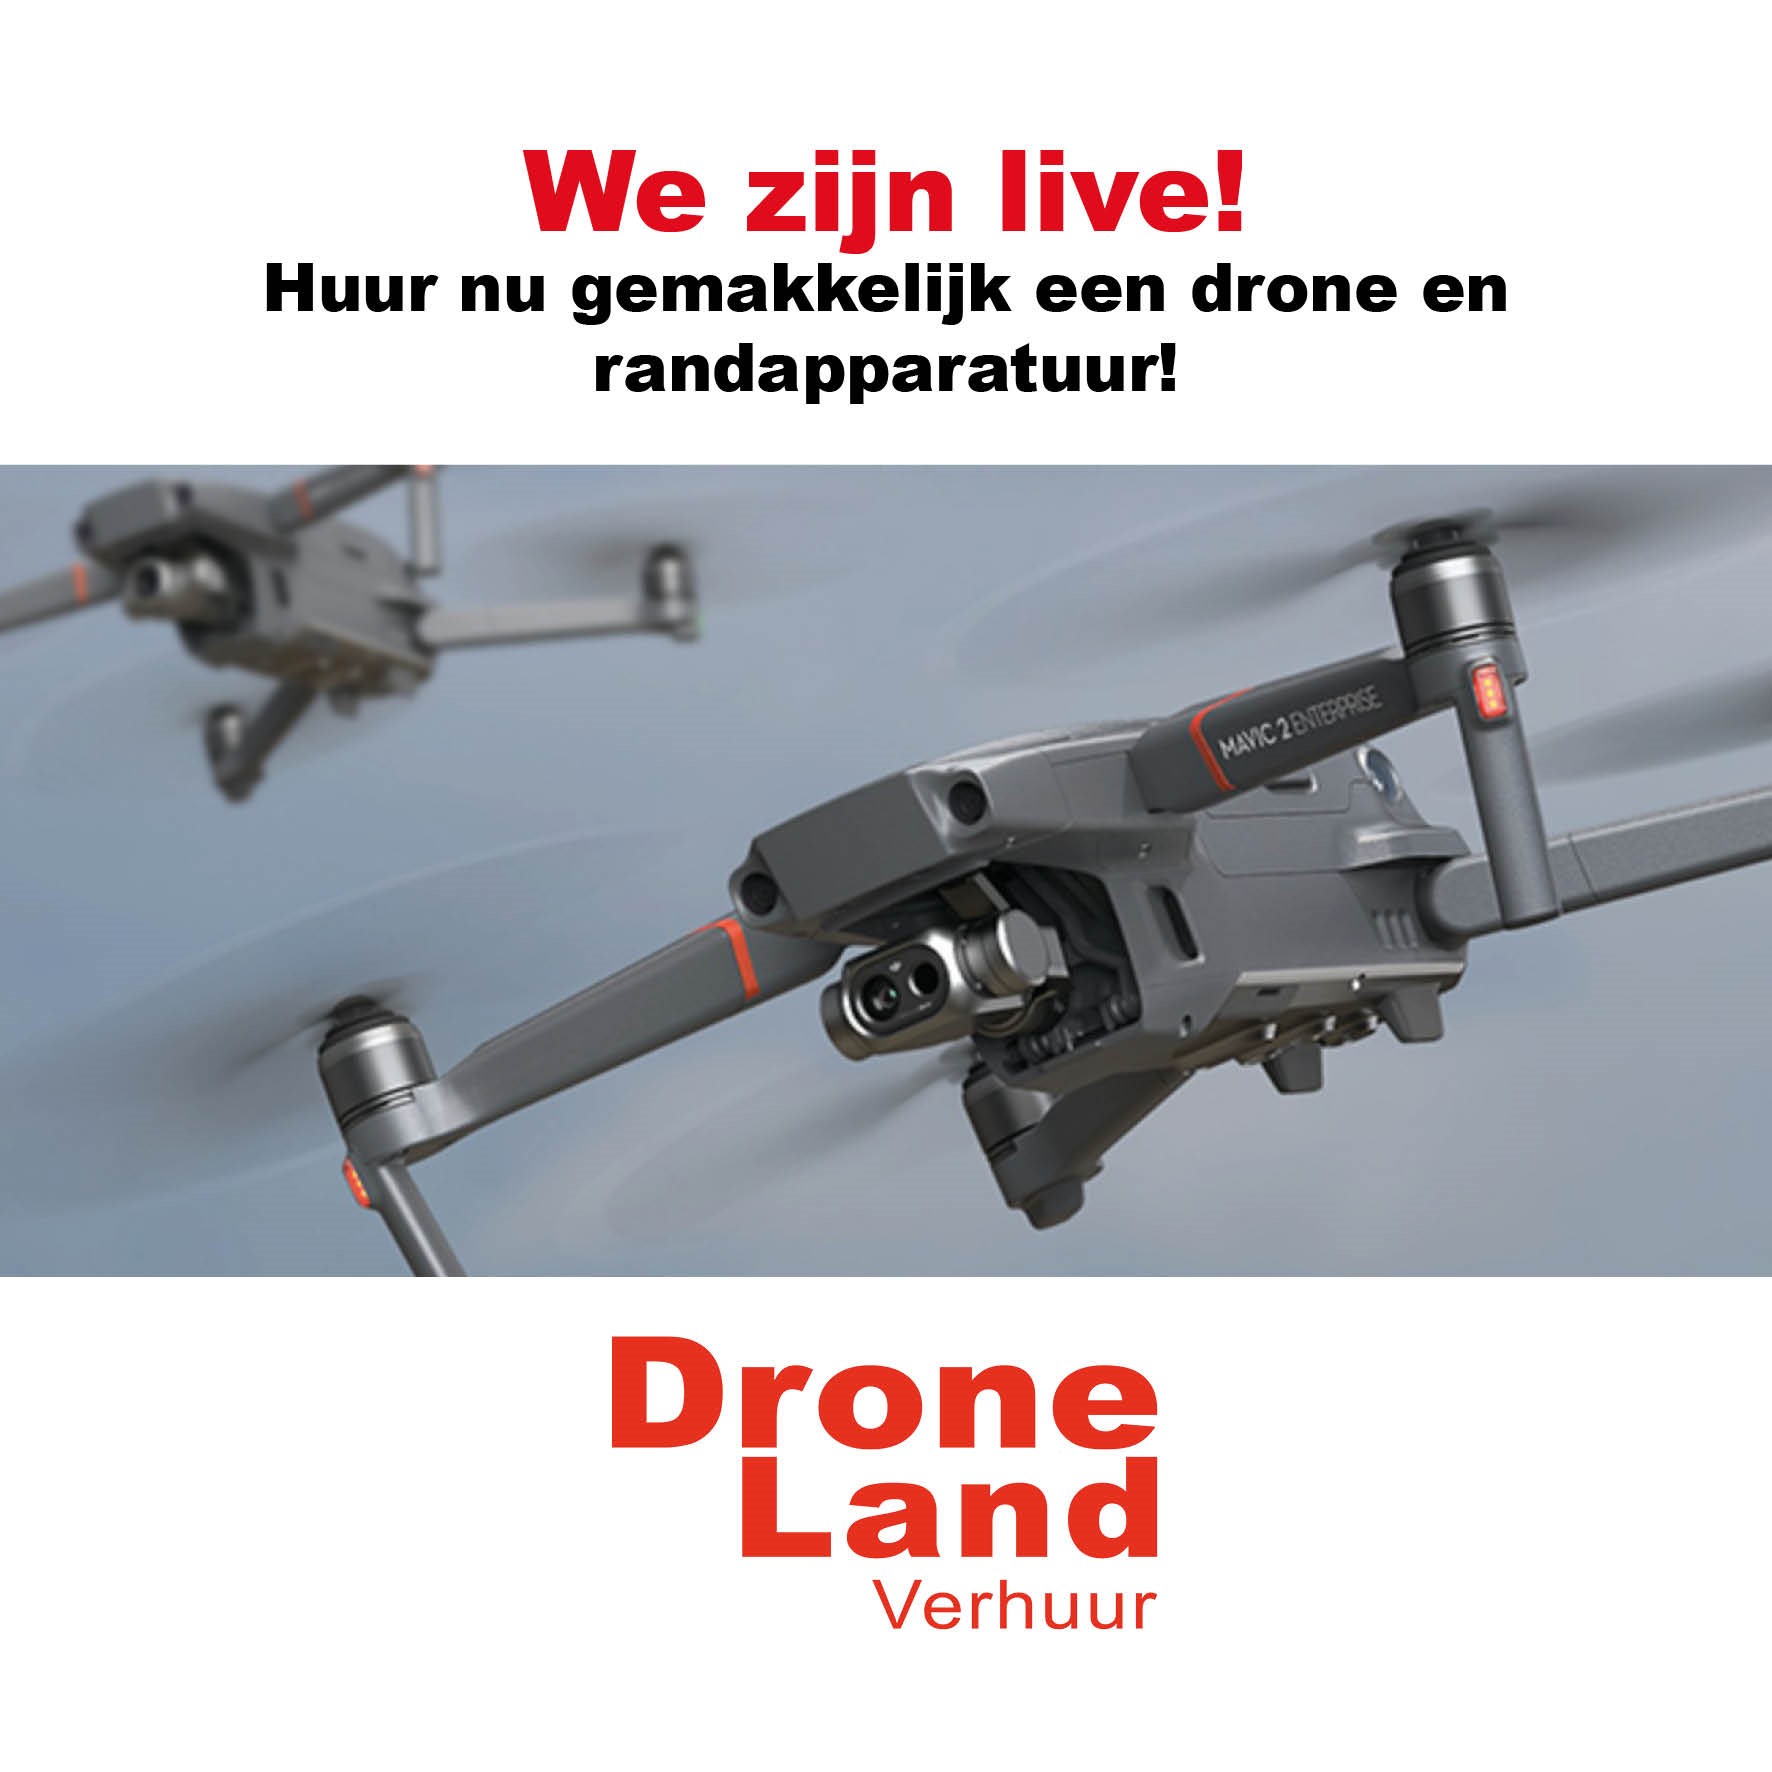 DroneLand Verhuur, de nieuwe tak van DroneLand